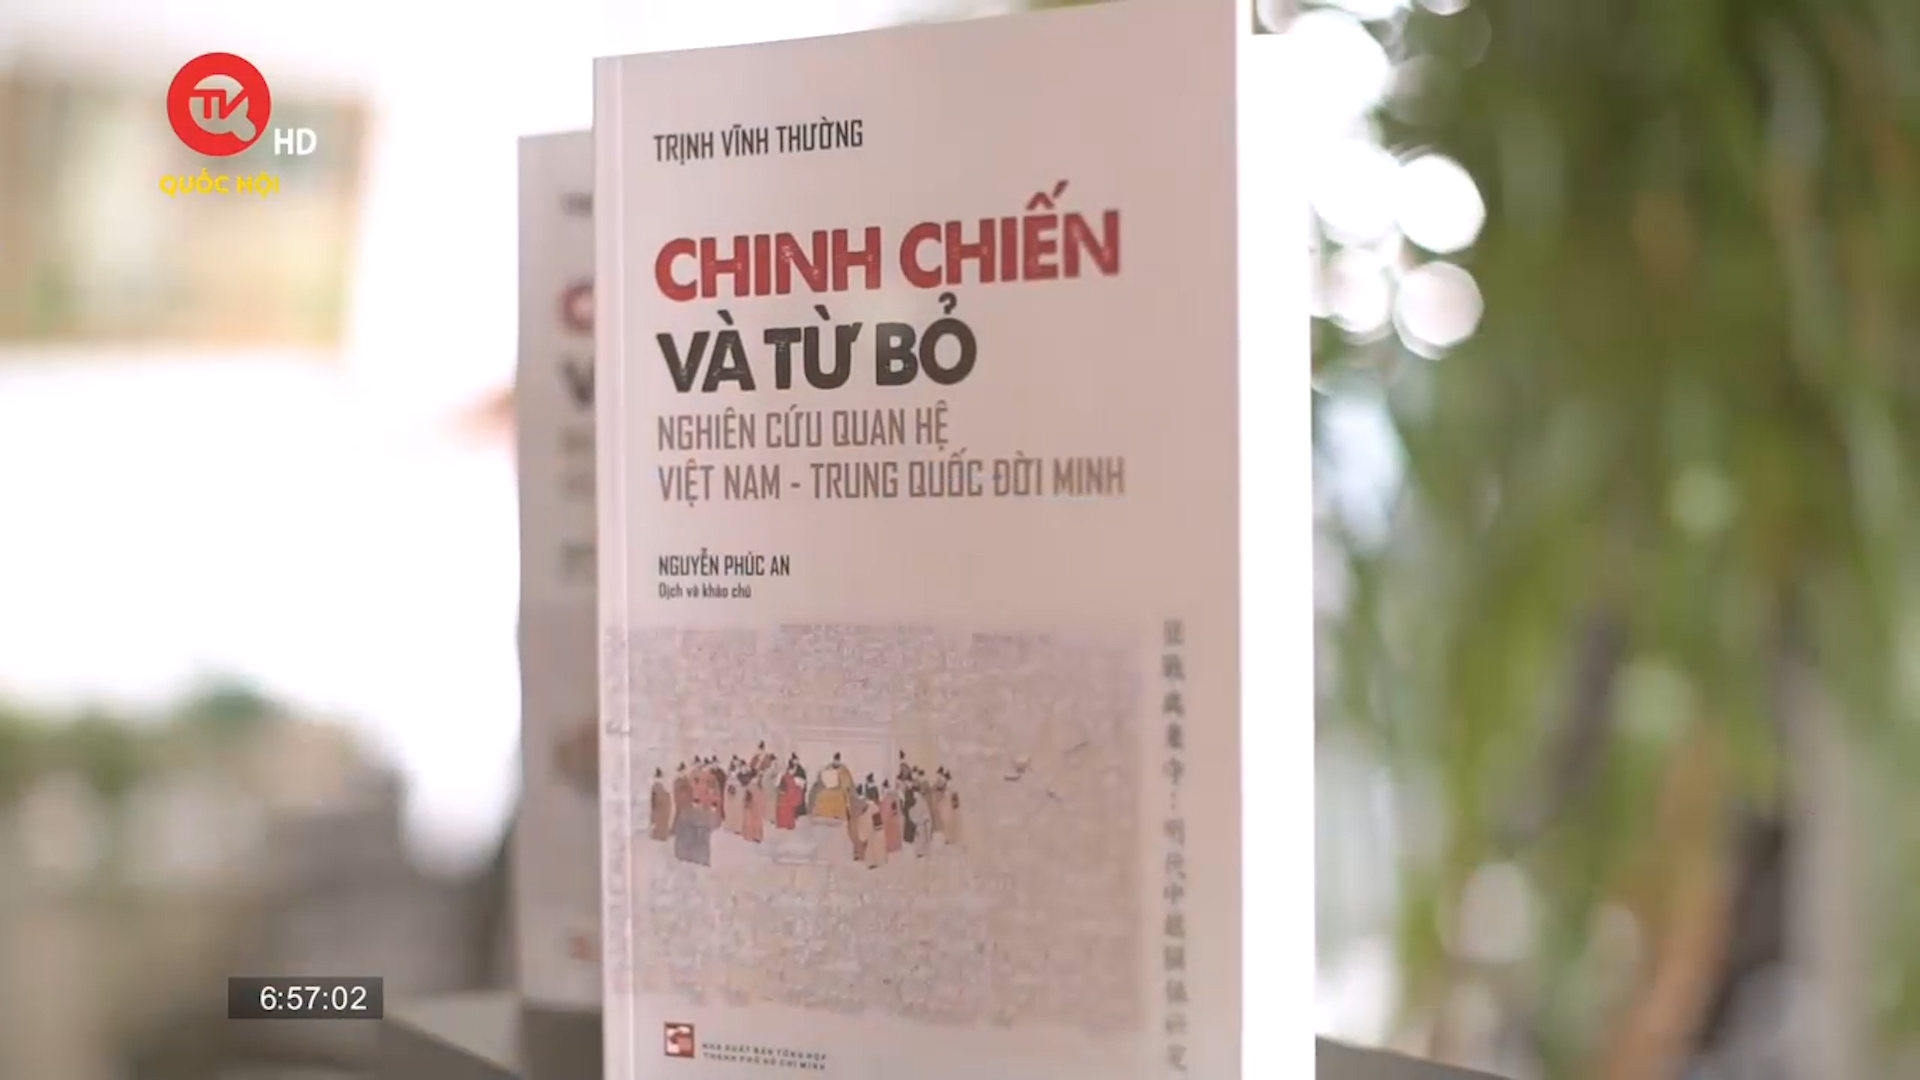 Cuốn sách tôi chọn: “Chinh chiến và từ bỏ: Nghiên cứu quan hệ Việt Nam - Trung Quốc đời Minh”